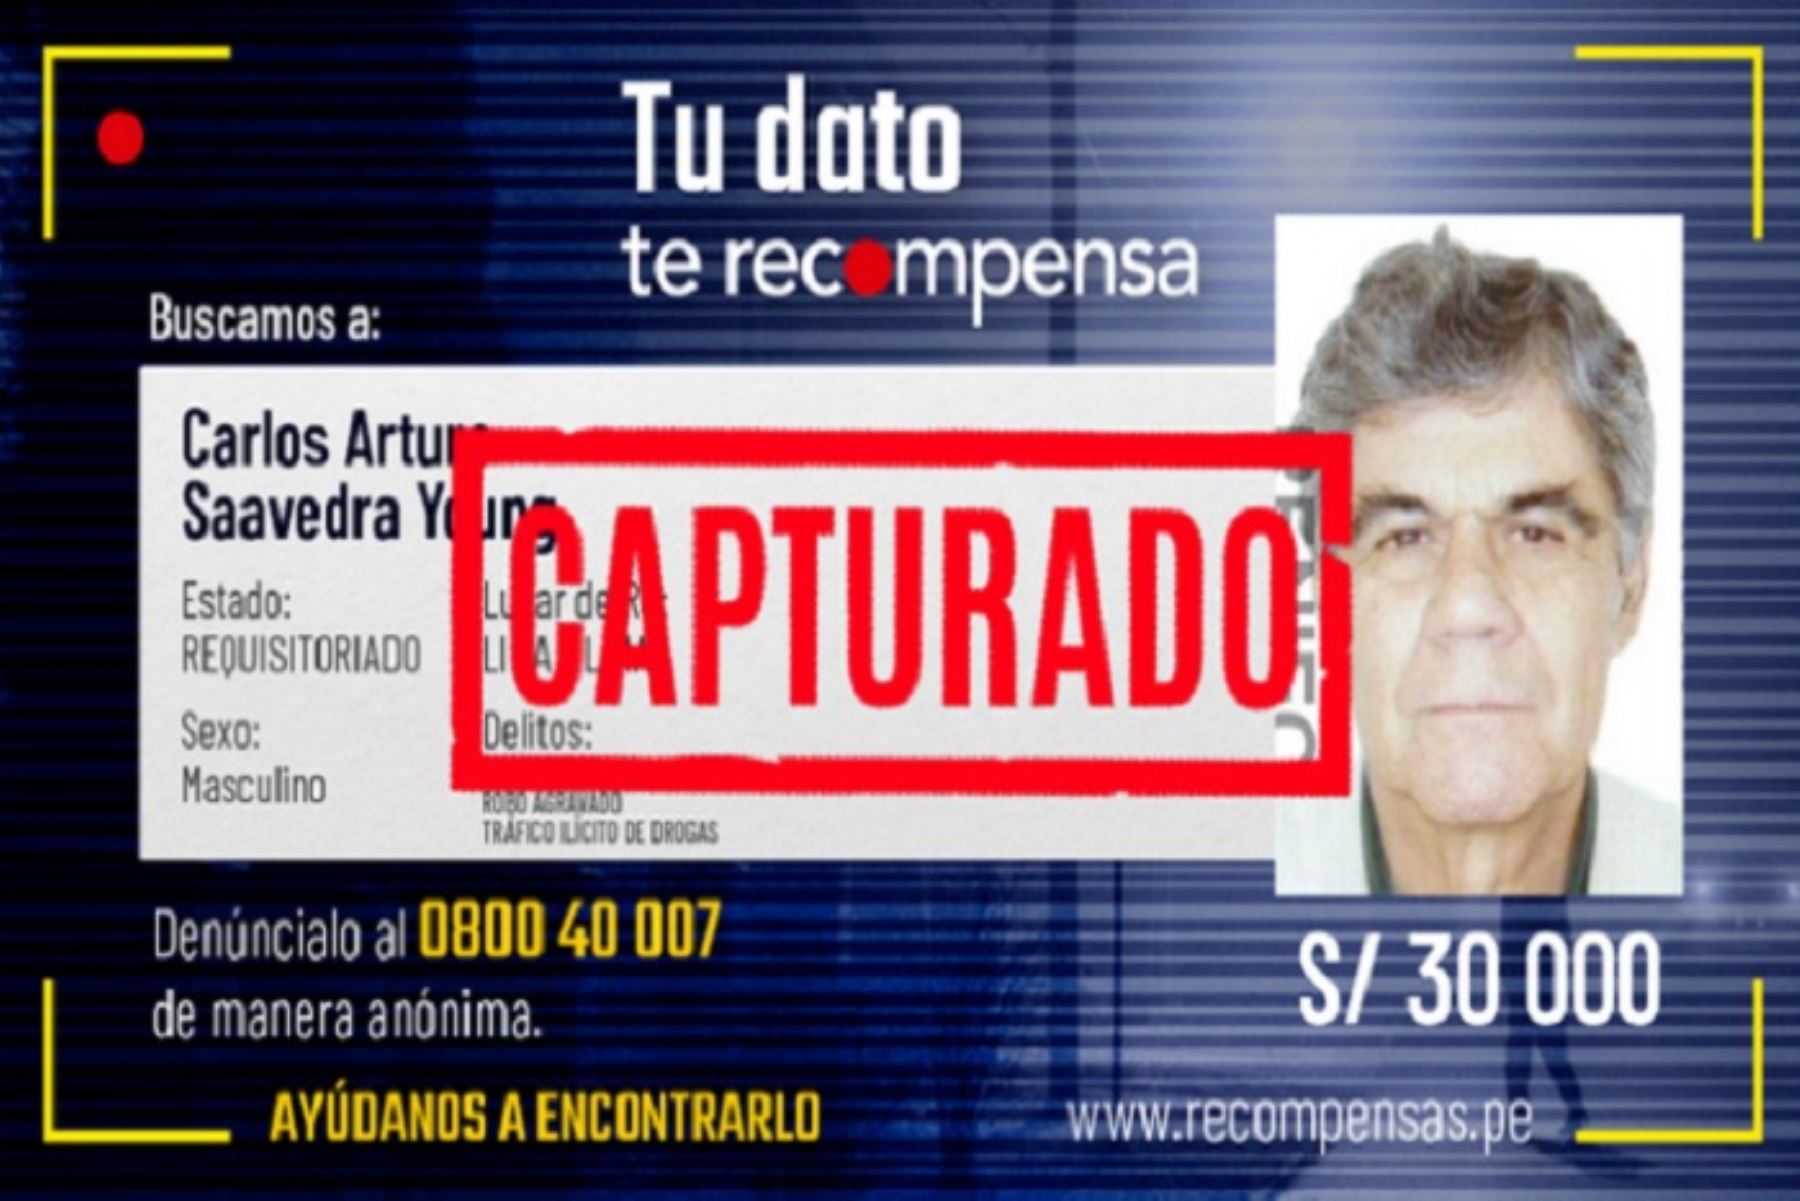 Mininter ofrecía S/ 30 000 de recompensa por información sobre Carlos Arturo Saavedra Young, detenido en Pacasmayo.